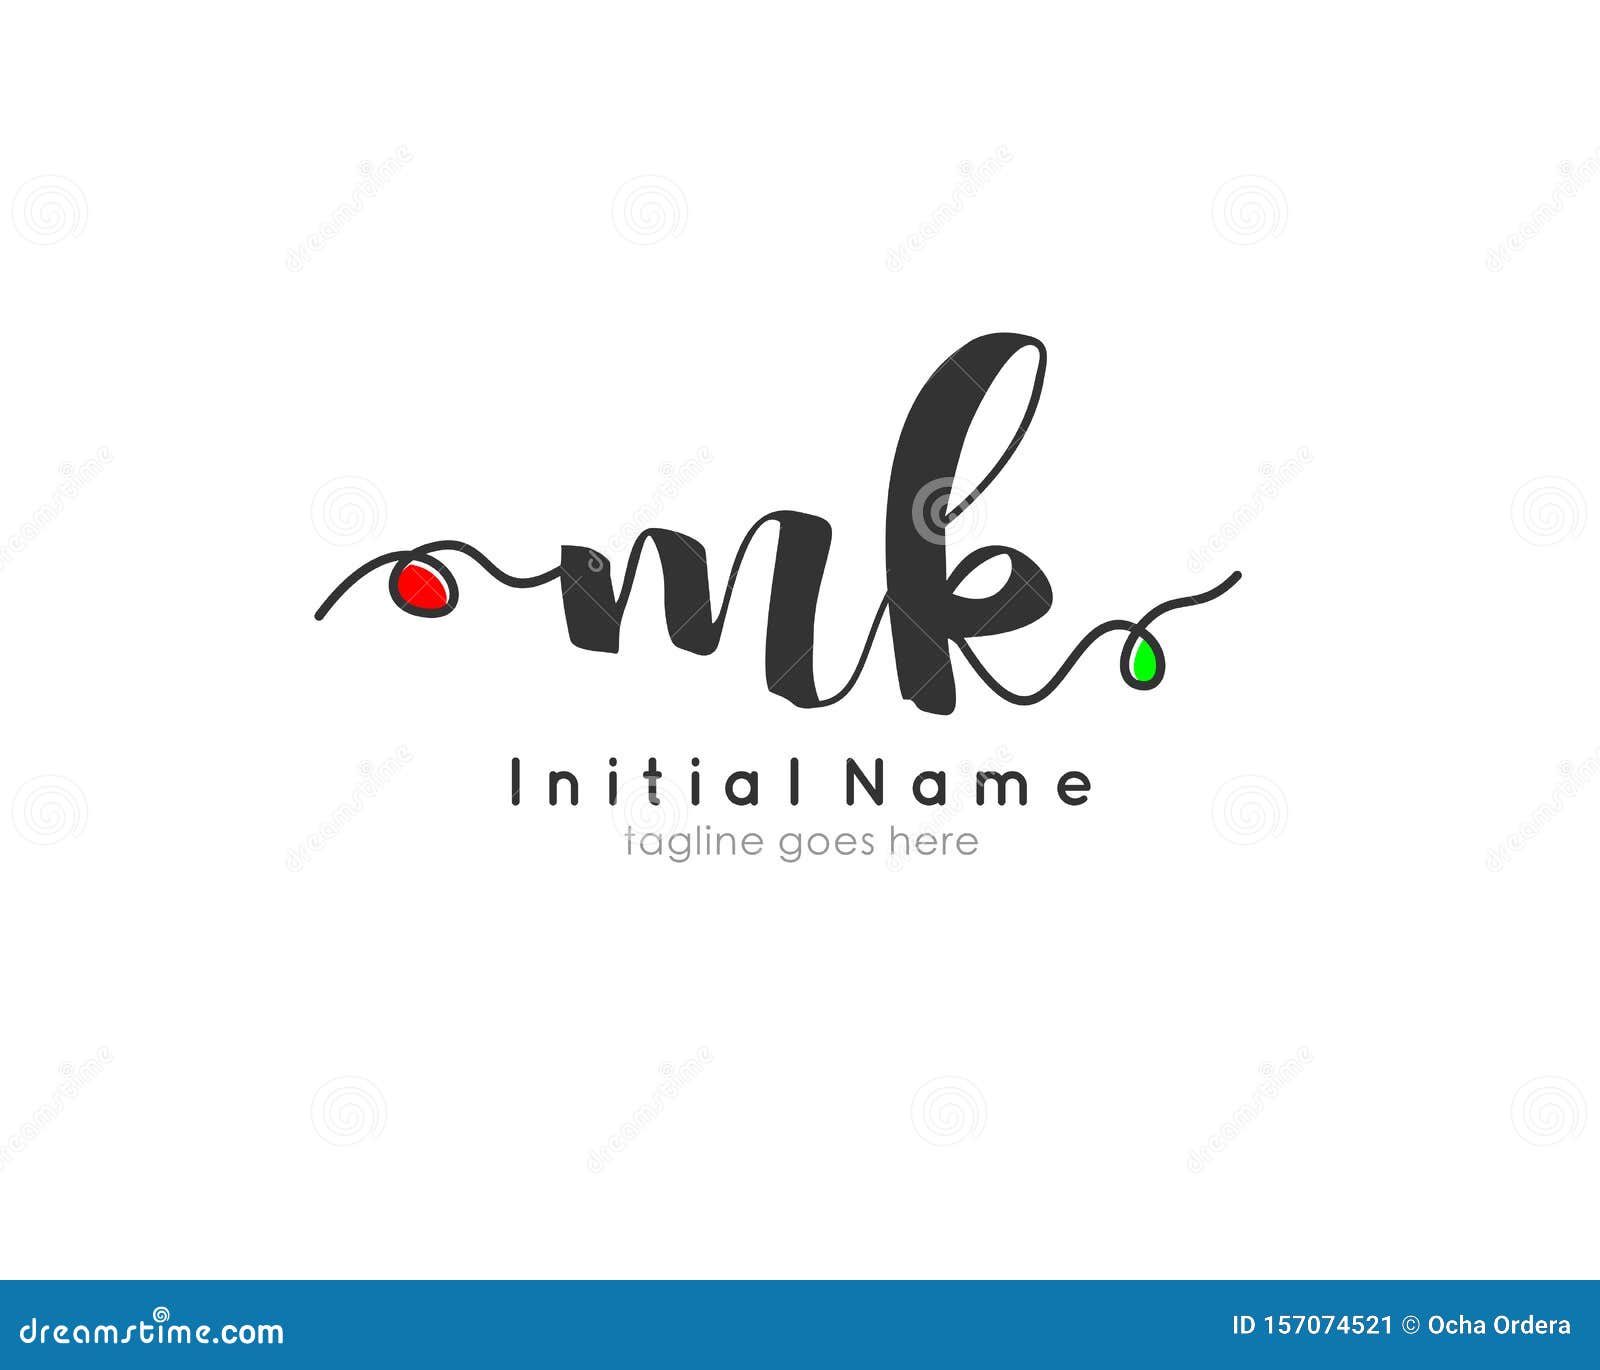 mk signature